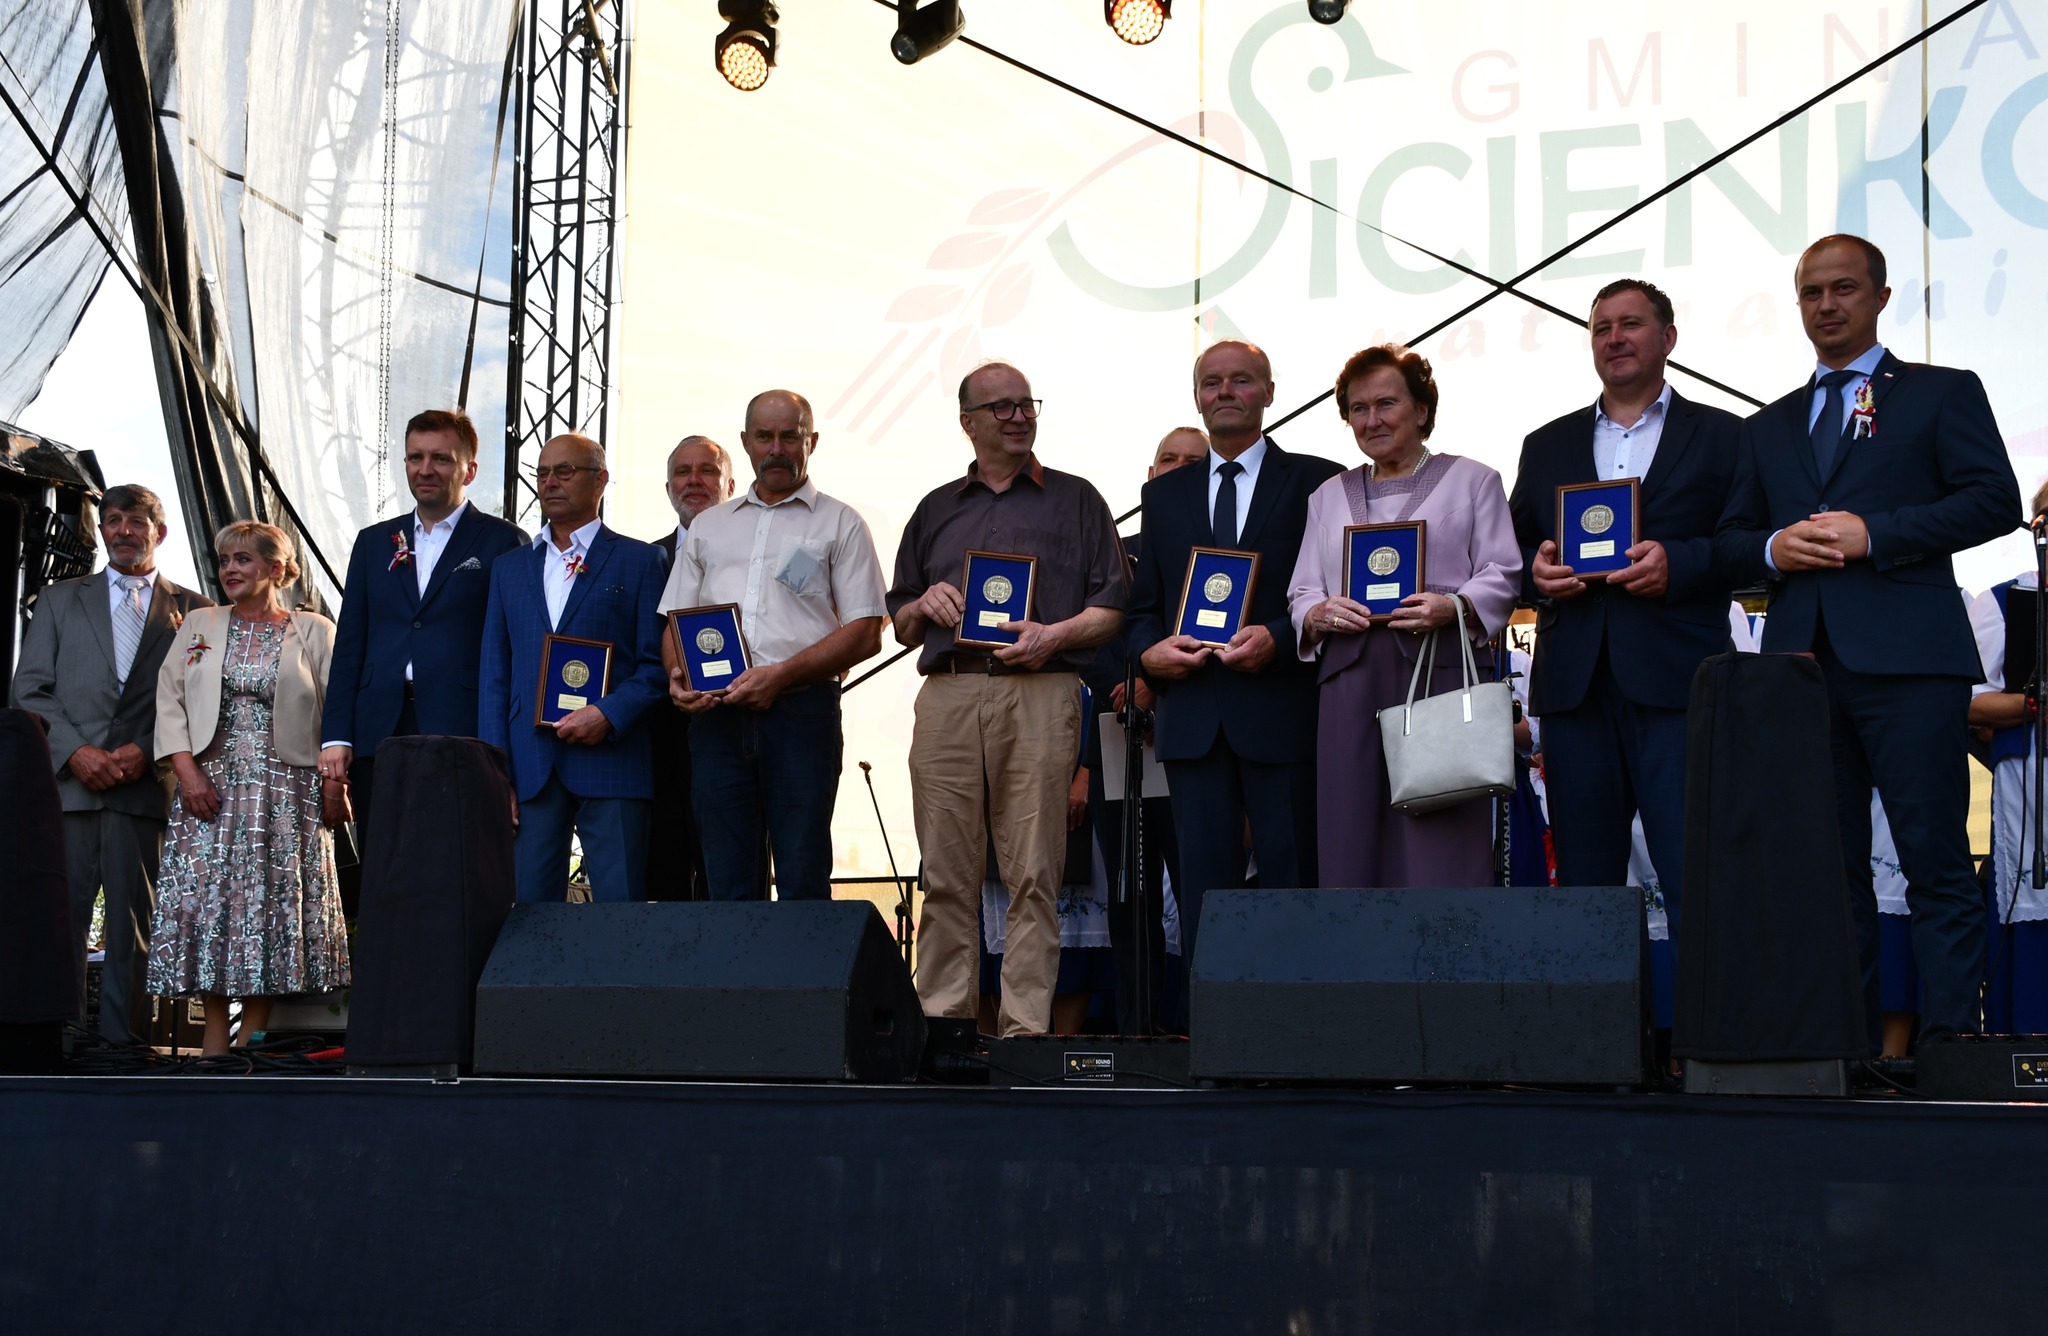 Medale Wojewody Kujawsko-Pomorskiego za szczególne zasługi dla rolnictwa w regionie